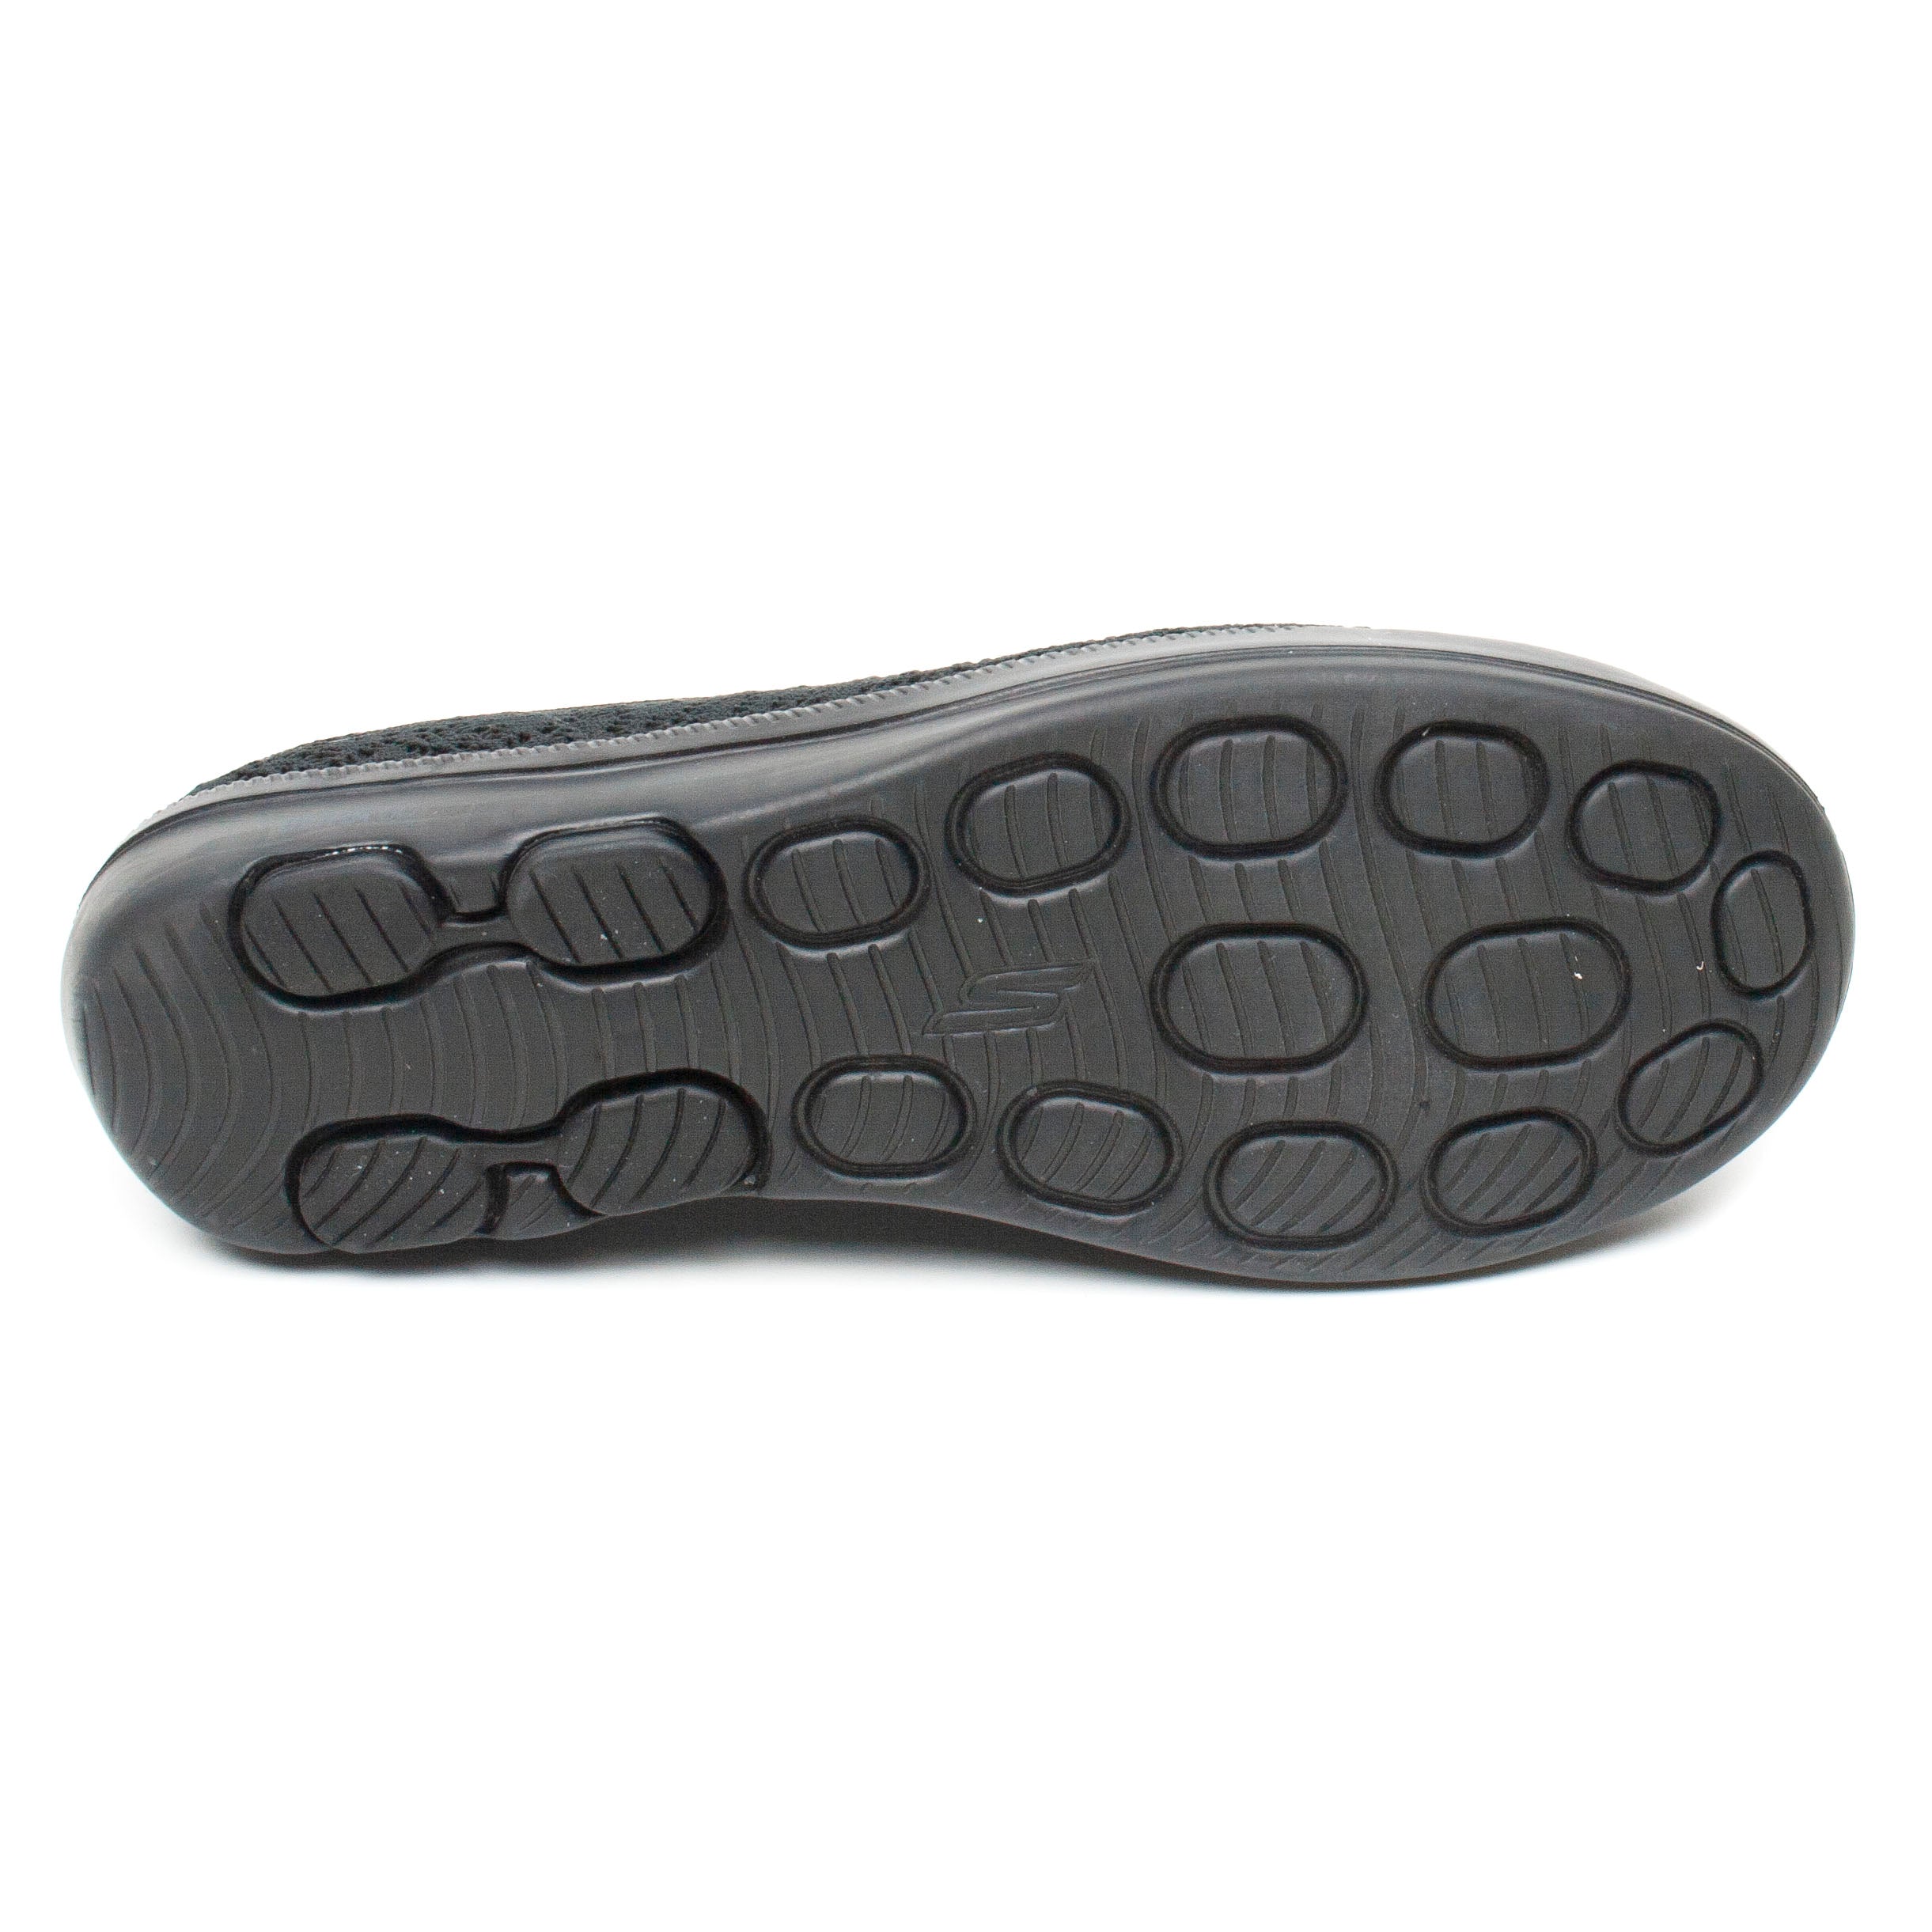 Skechers pantofi dama 16512 negru ID2300-NG